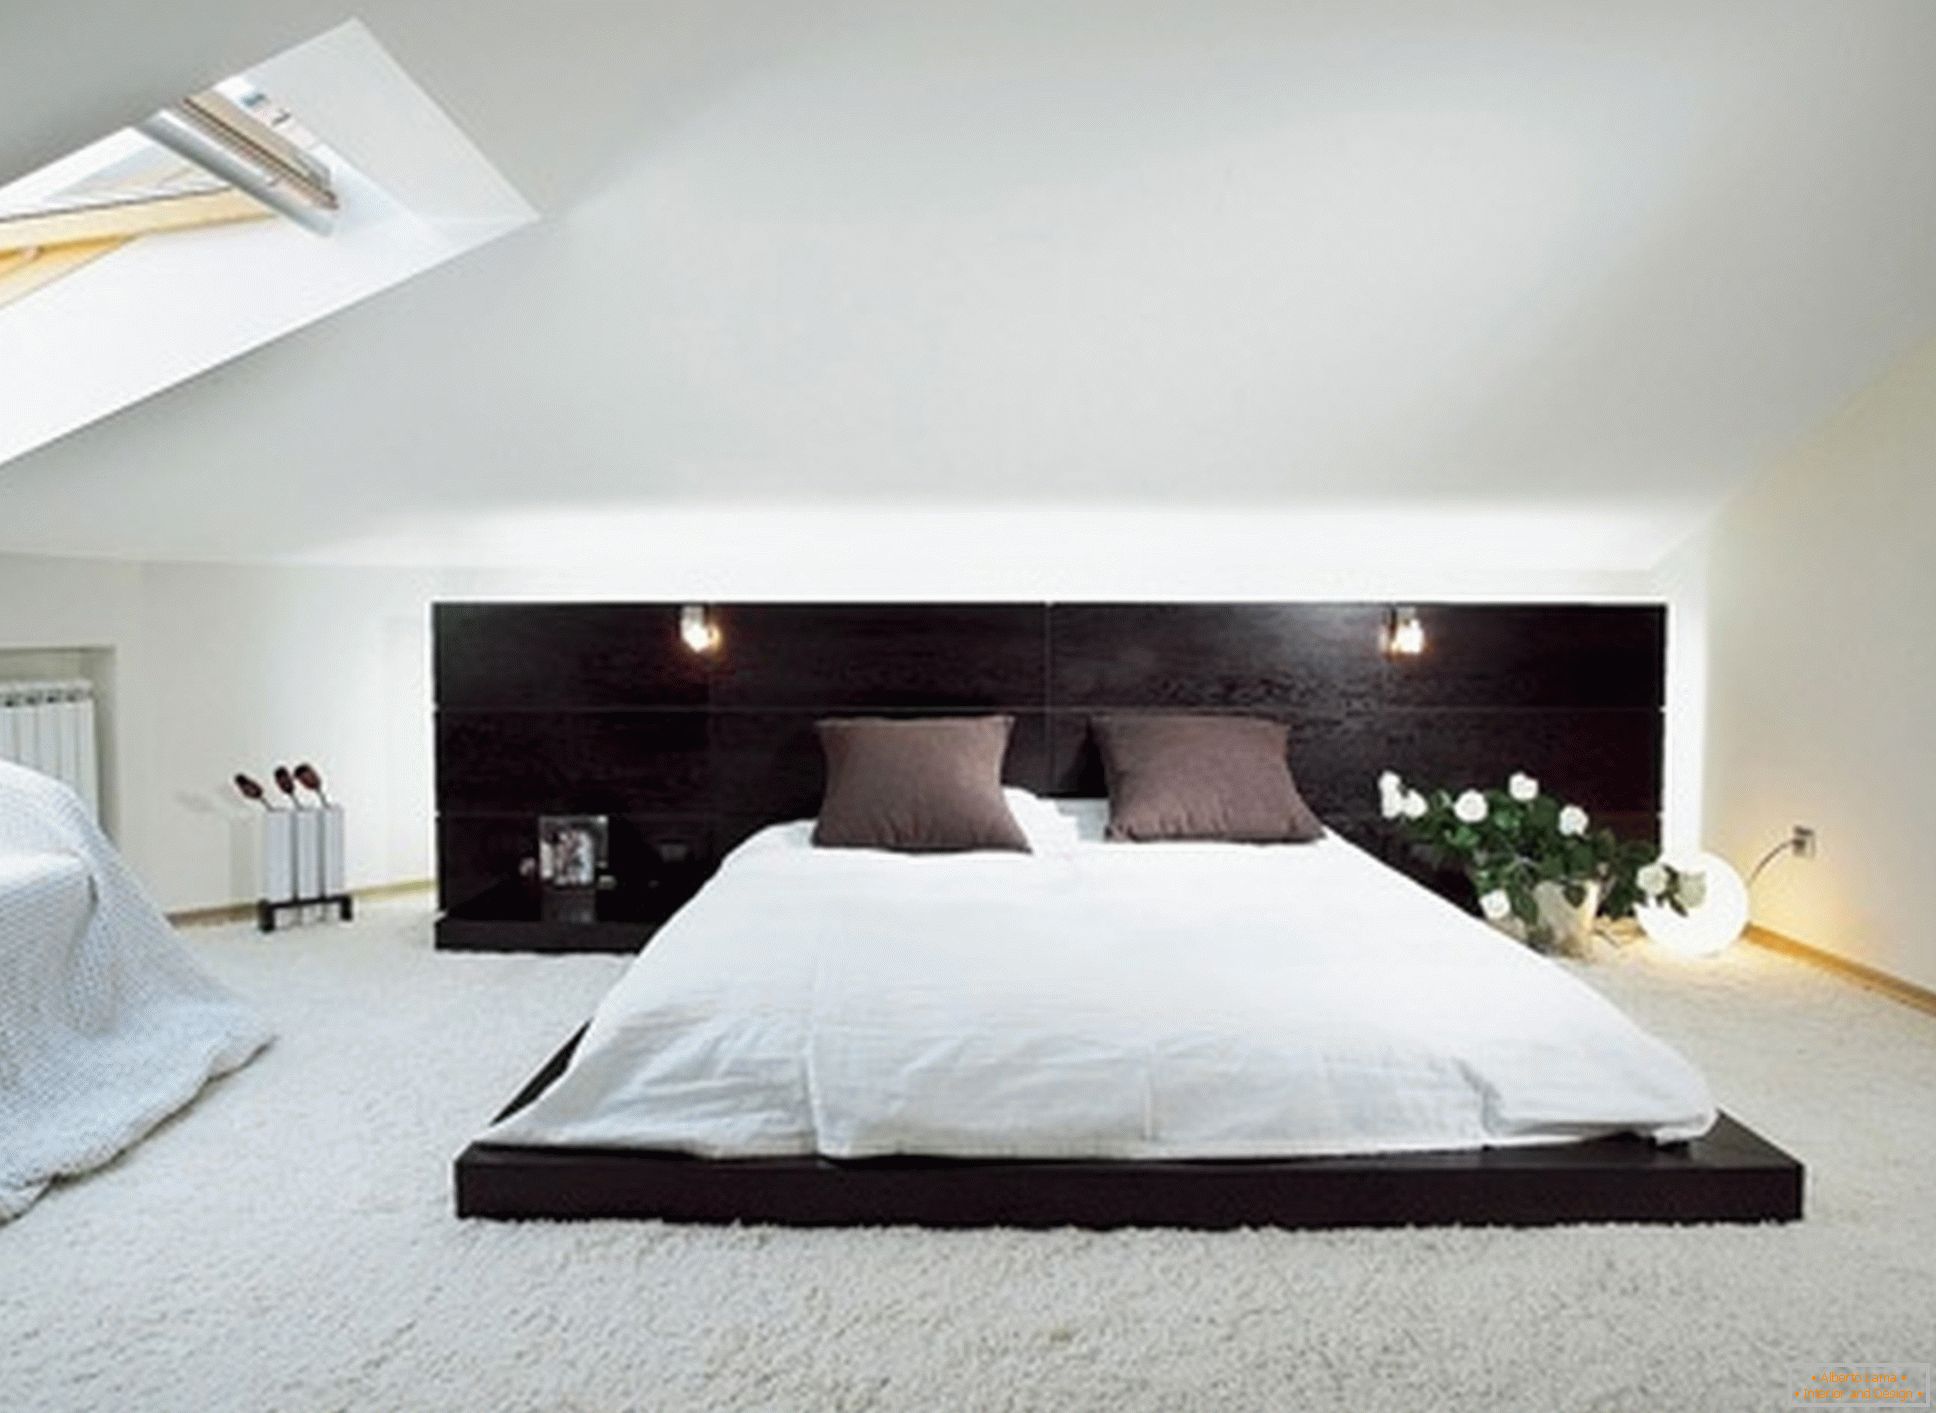 Luksuzna spavaća soba u stilu minimalizma - primer uspešnog dizajna male sobe na podu potkrovlja.